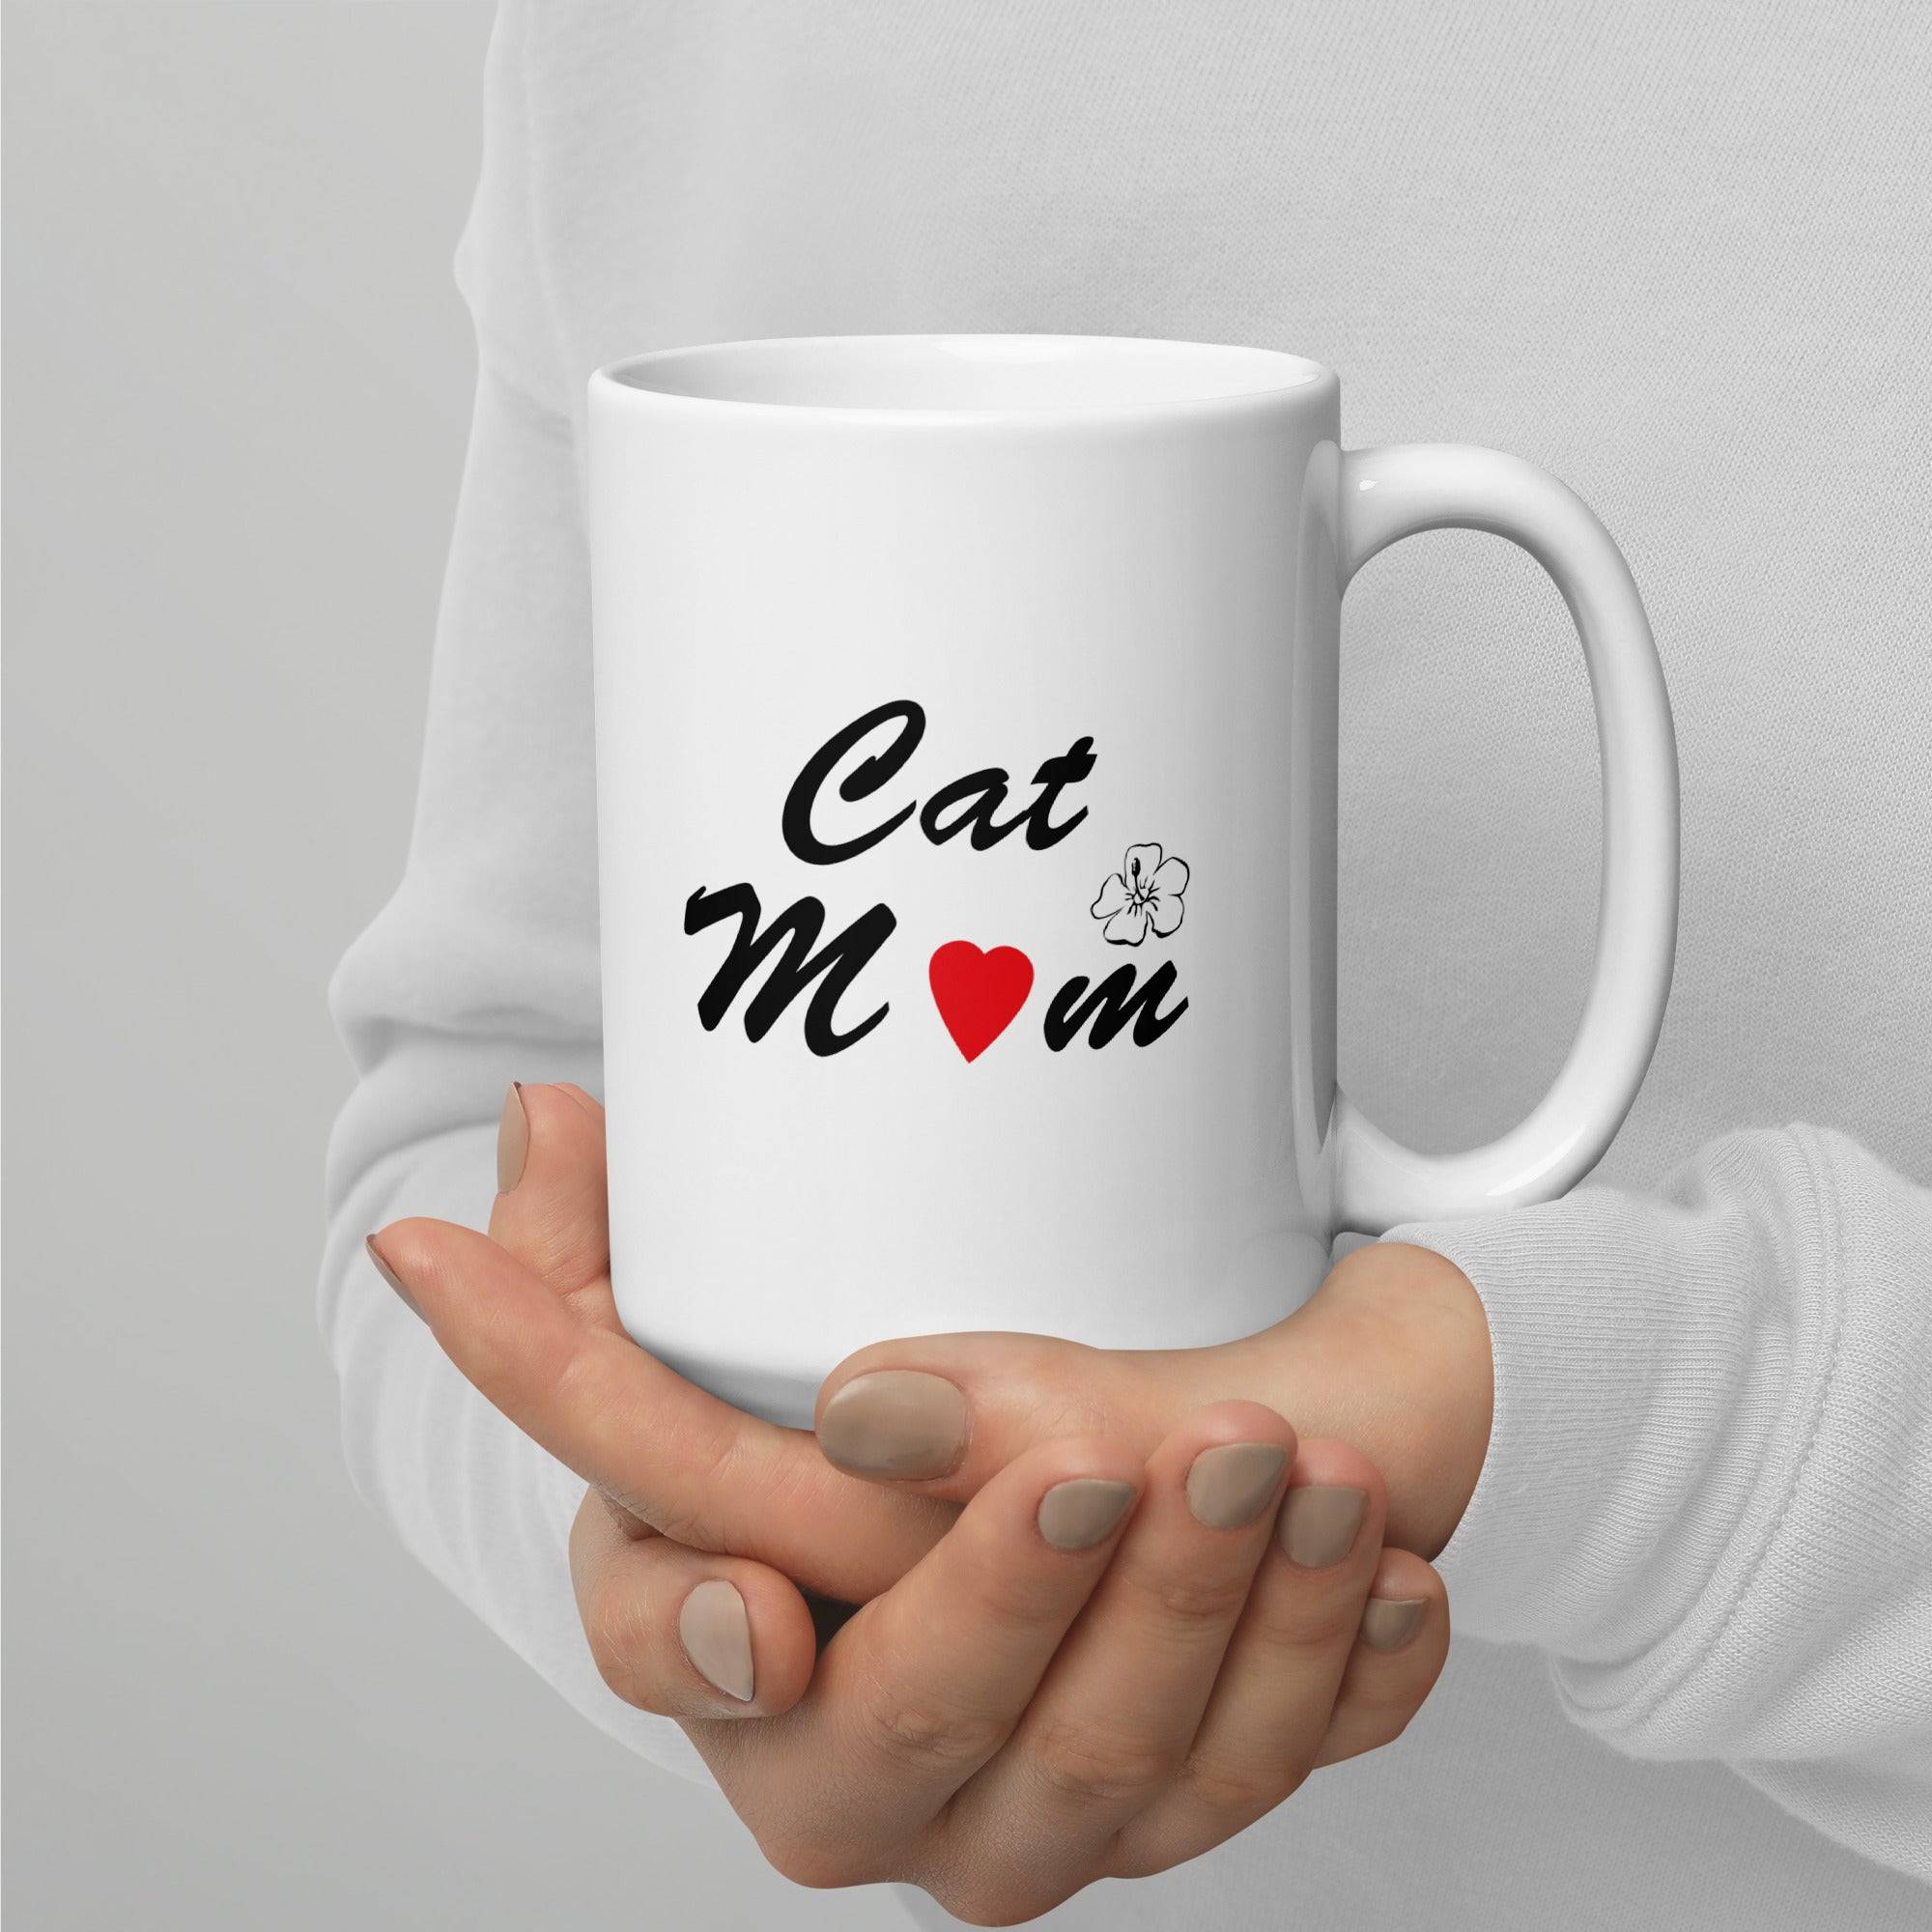 Ceramic Mug with Cat Mom Design - White Coffee Mug Online